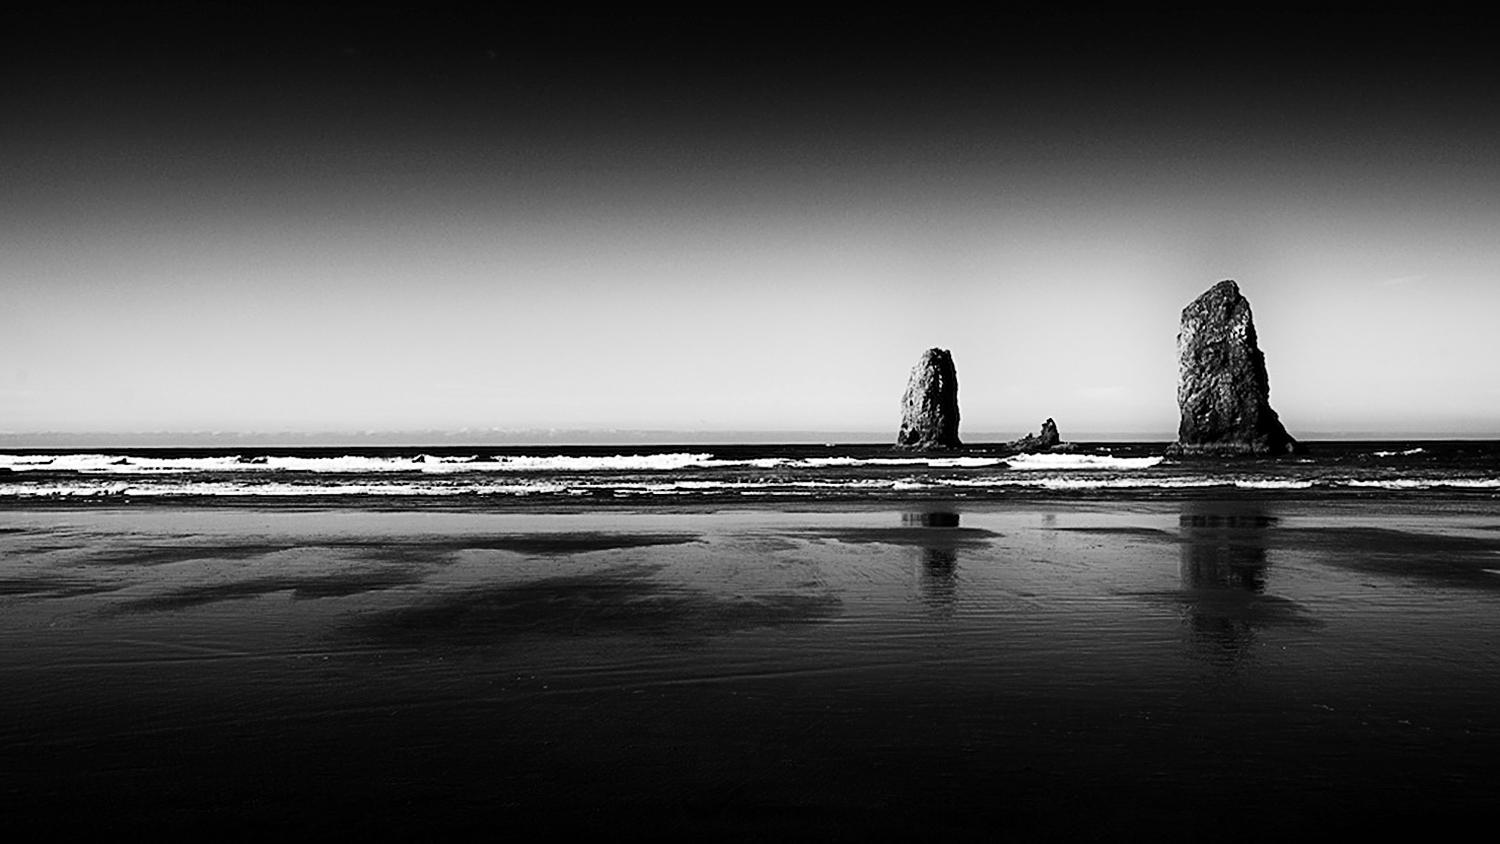 Michael Götze Landscape Photograph - Oregon Beach - contemporary black/white photography ocean landscape, footbridge